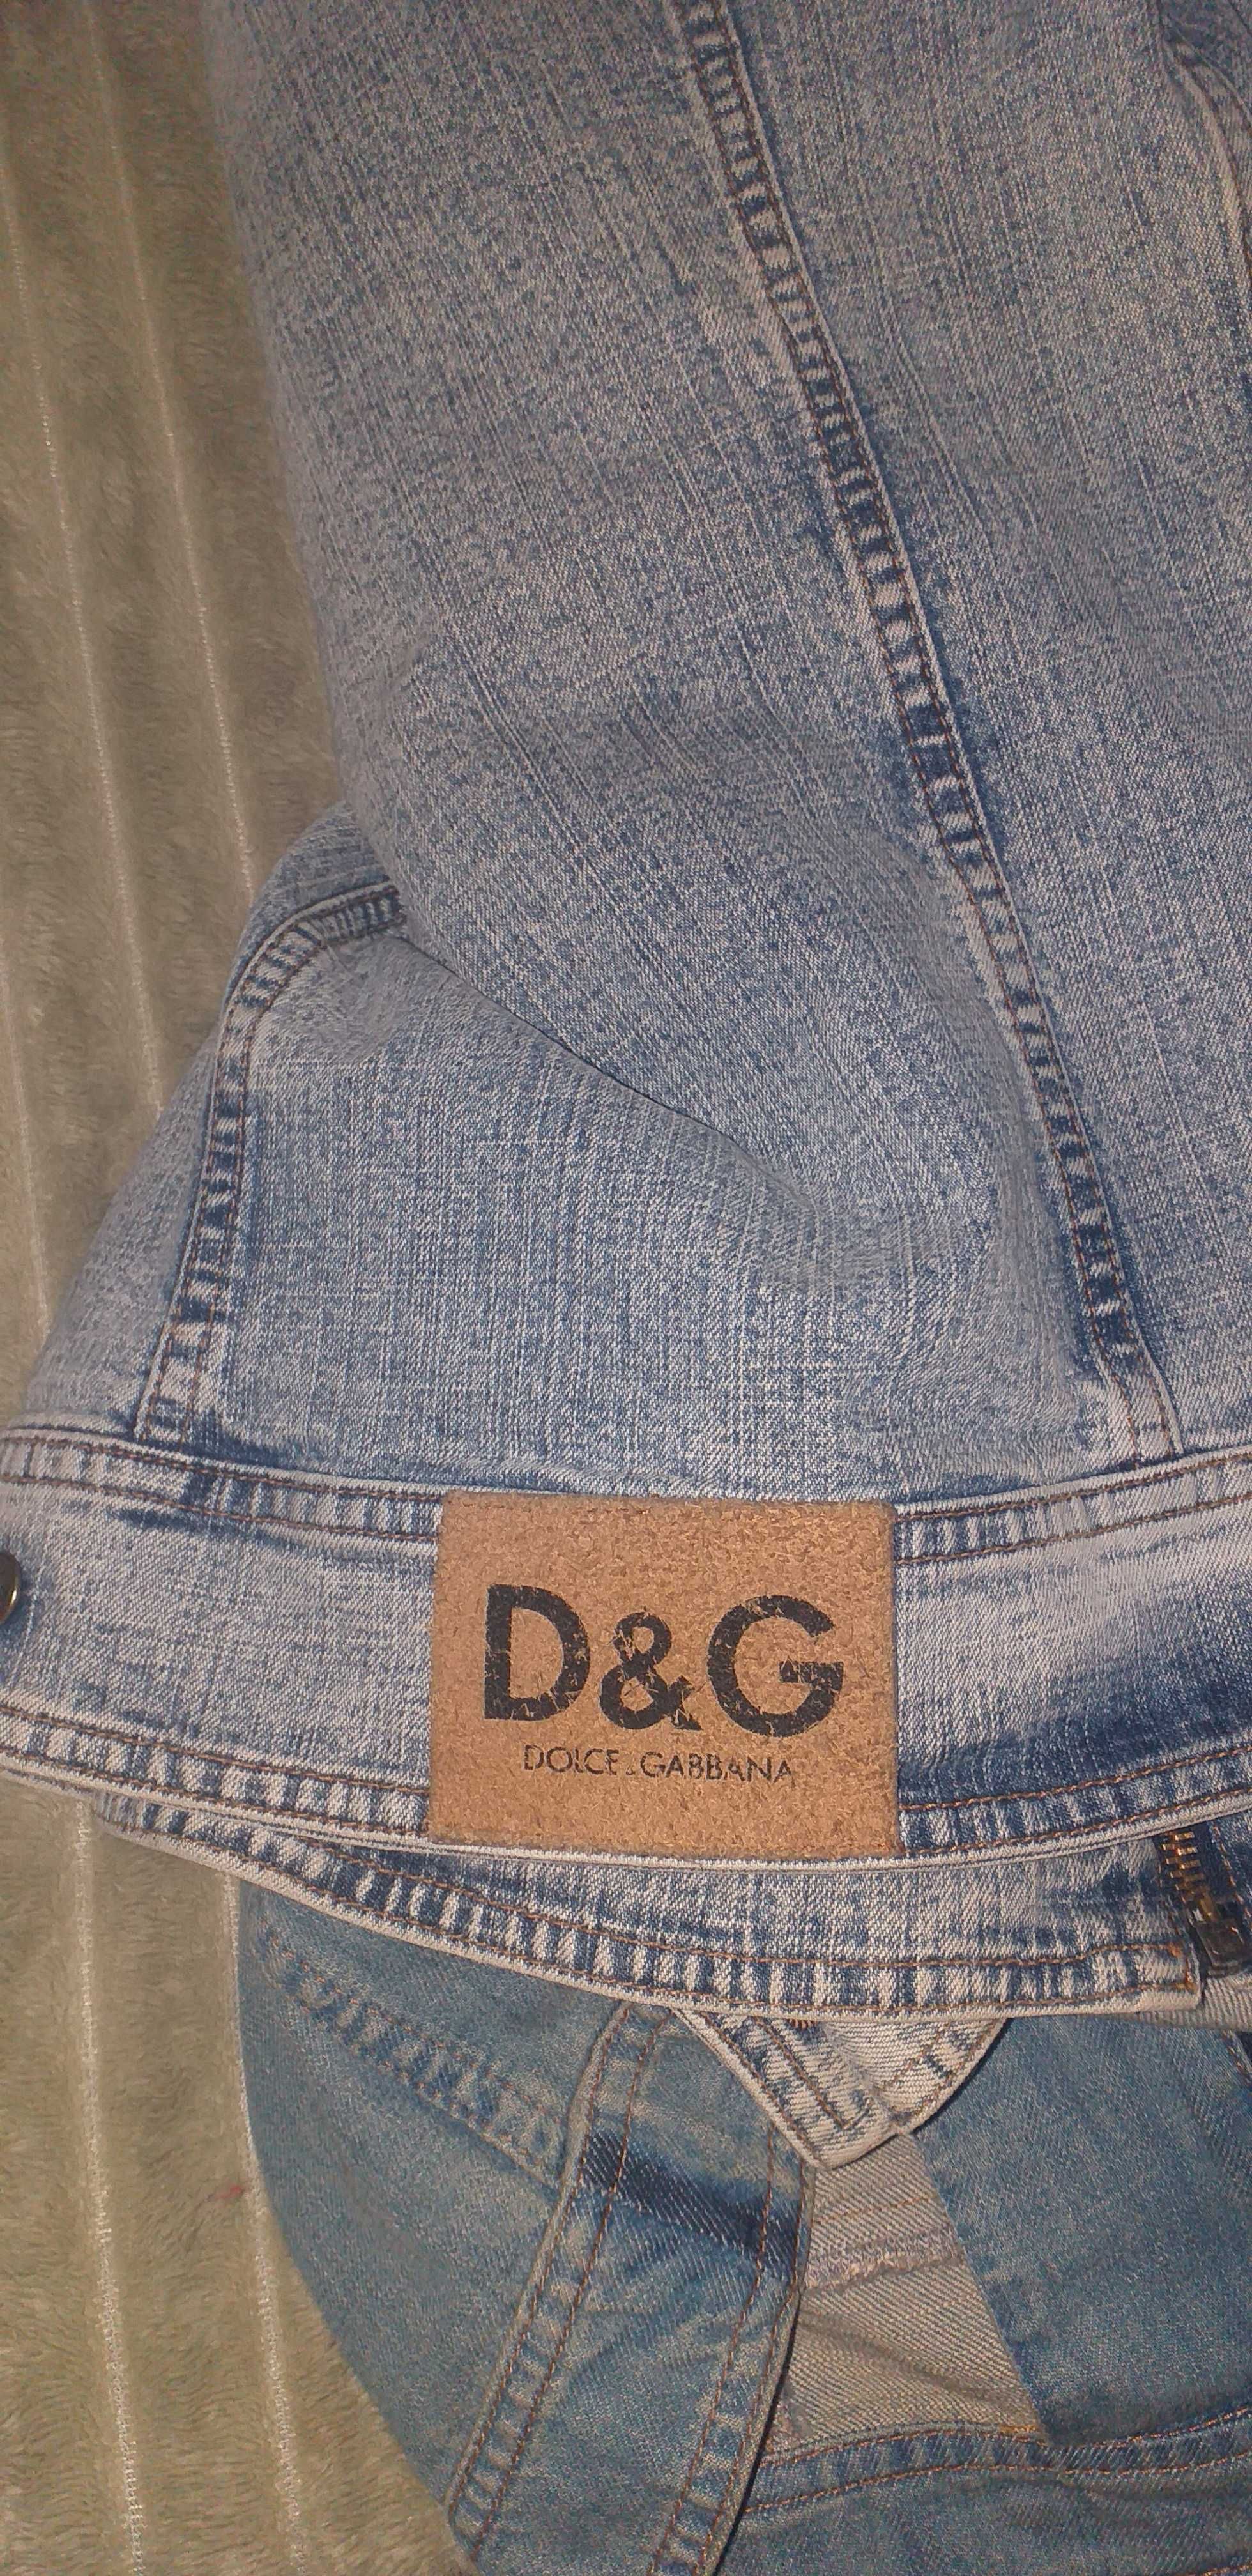 Куртки джинс фирмы  D&G и накидка